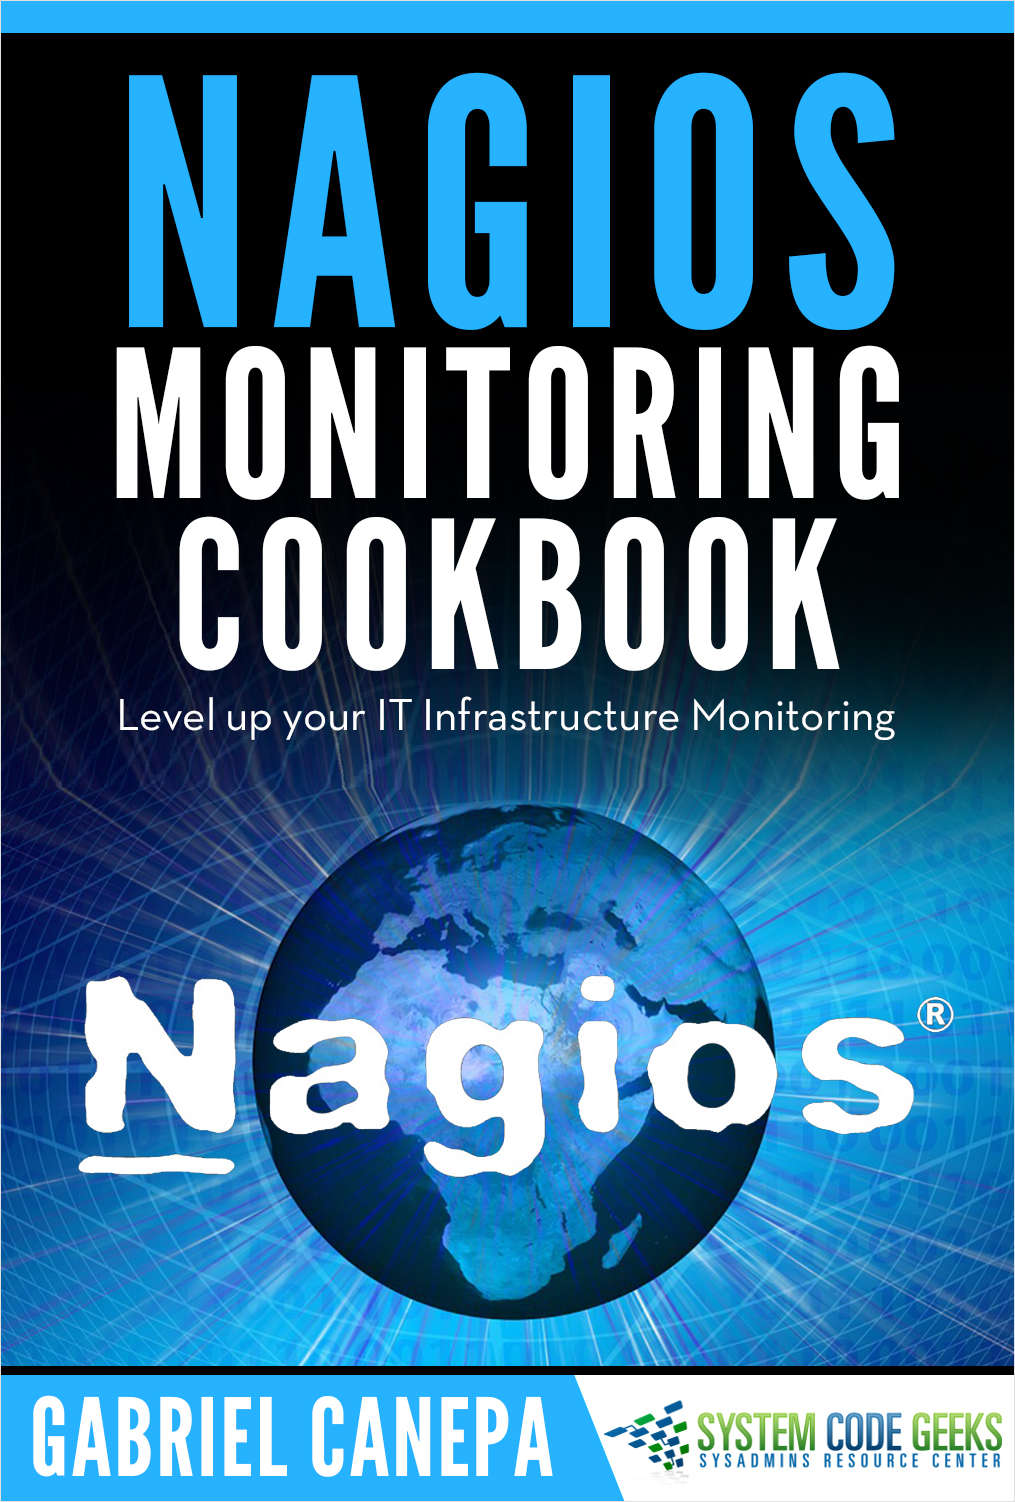 Nagios Monitoring Handbook